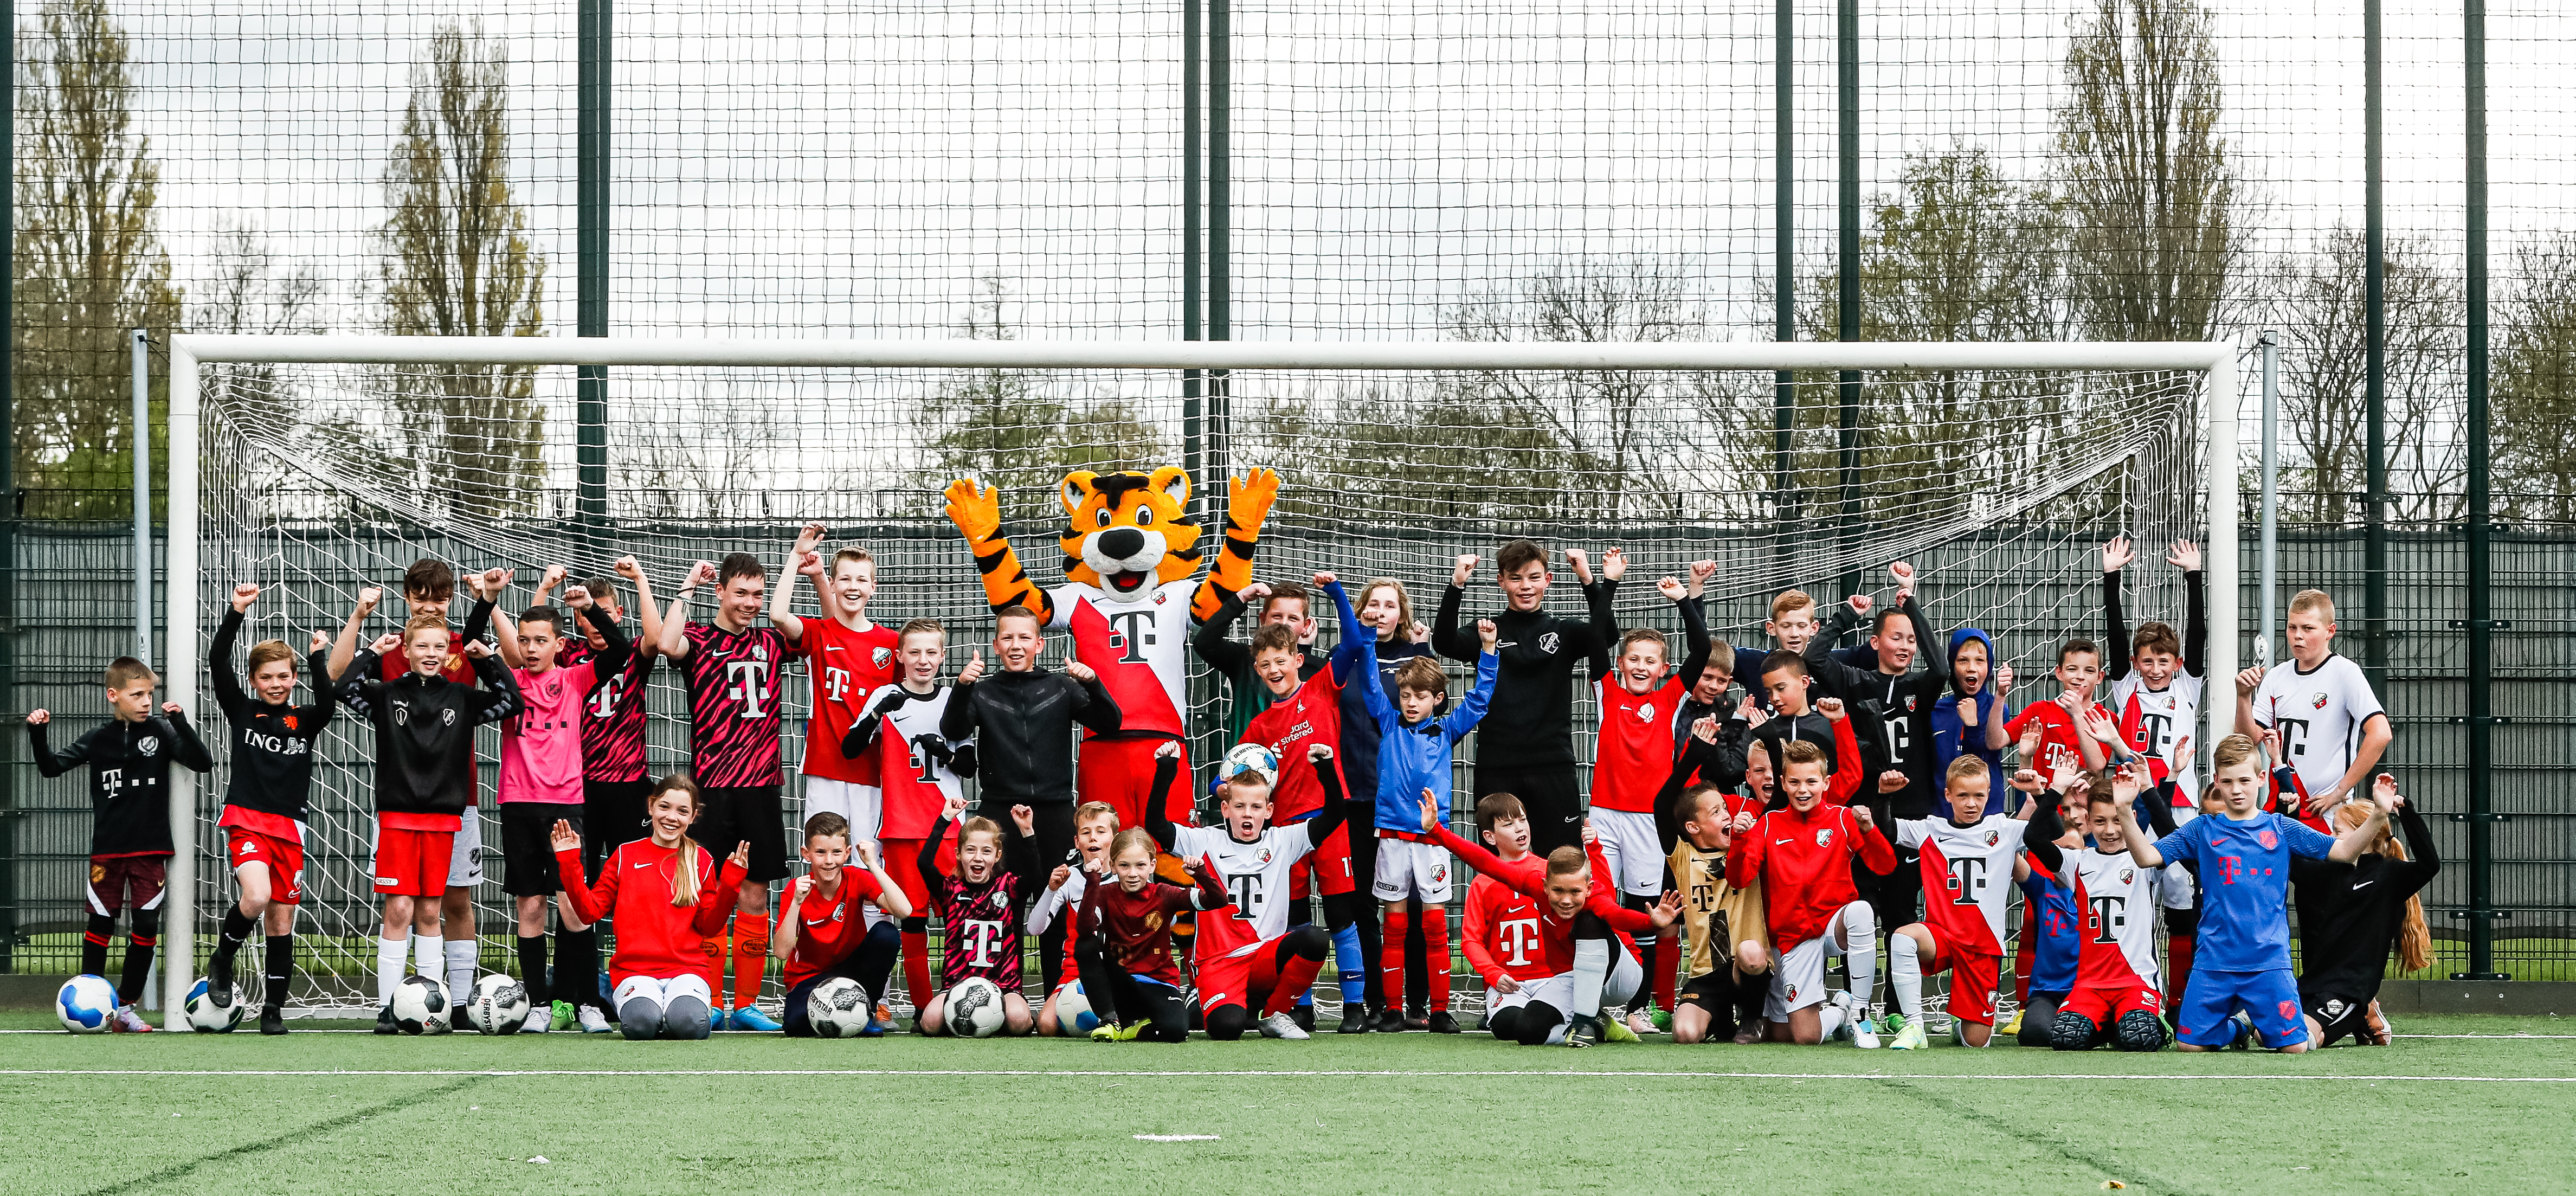 Leden Junior Tigers en Jonge Garde aan de bak tijdens Voetbalclinic